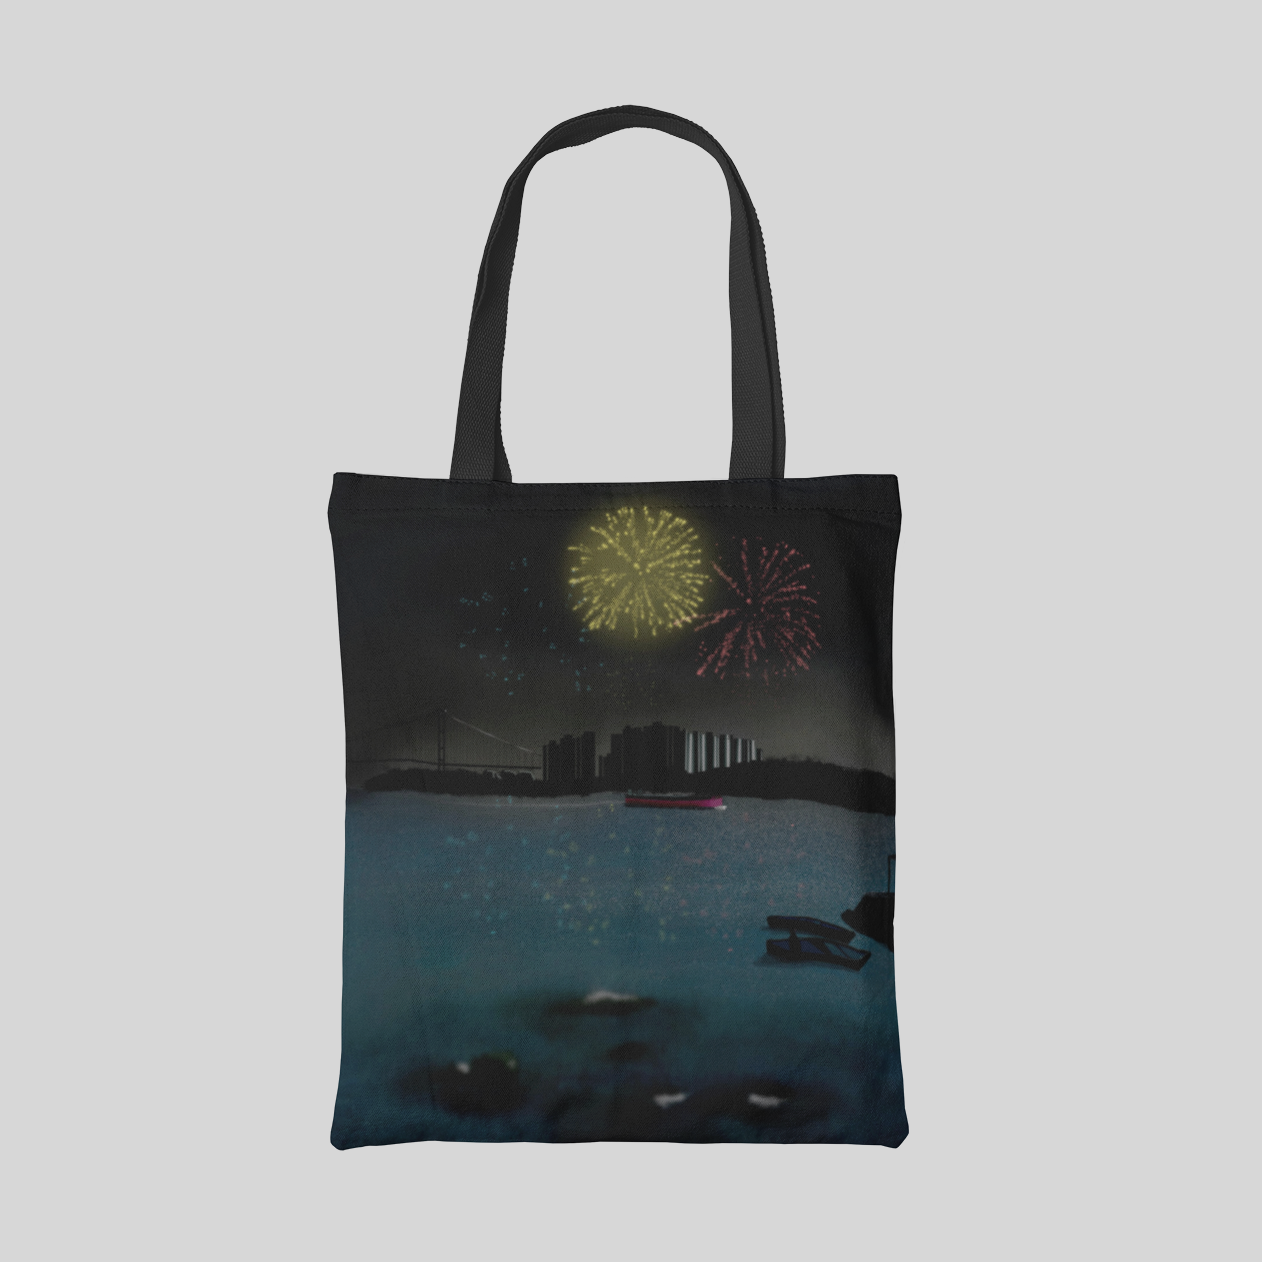 urban designed tote bag with HK harbour landscape and fireworks illustration, front side